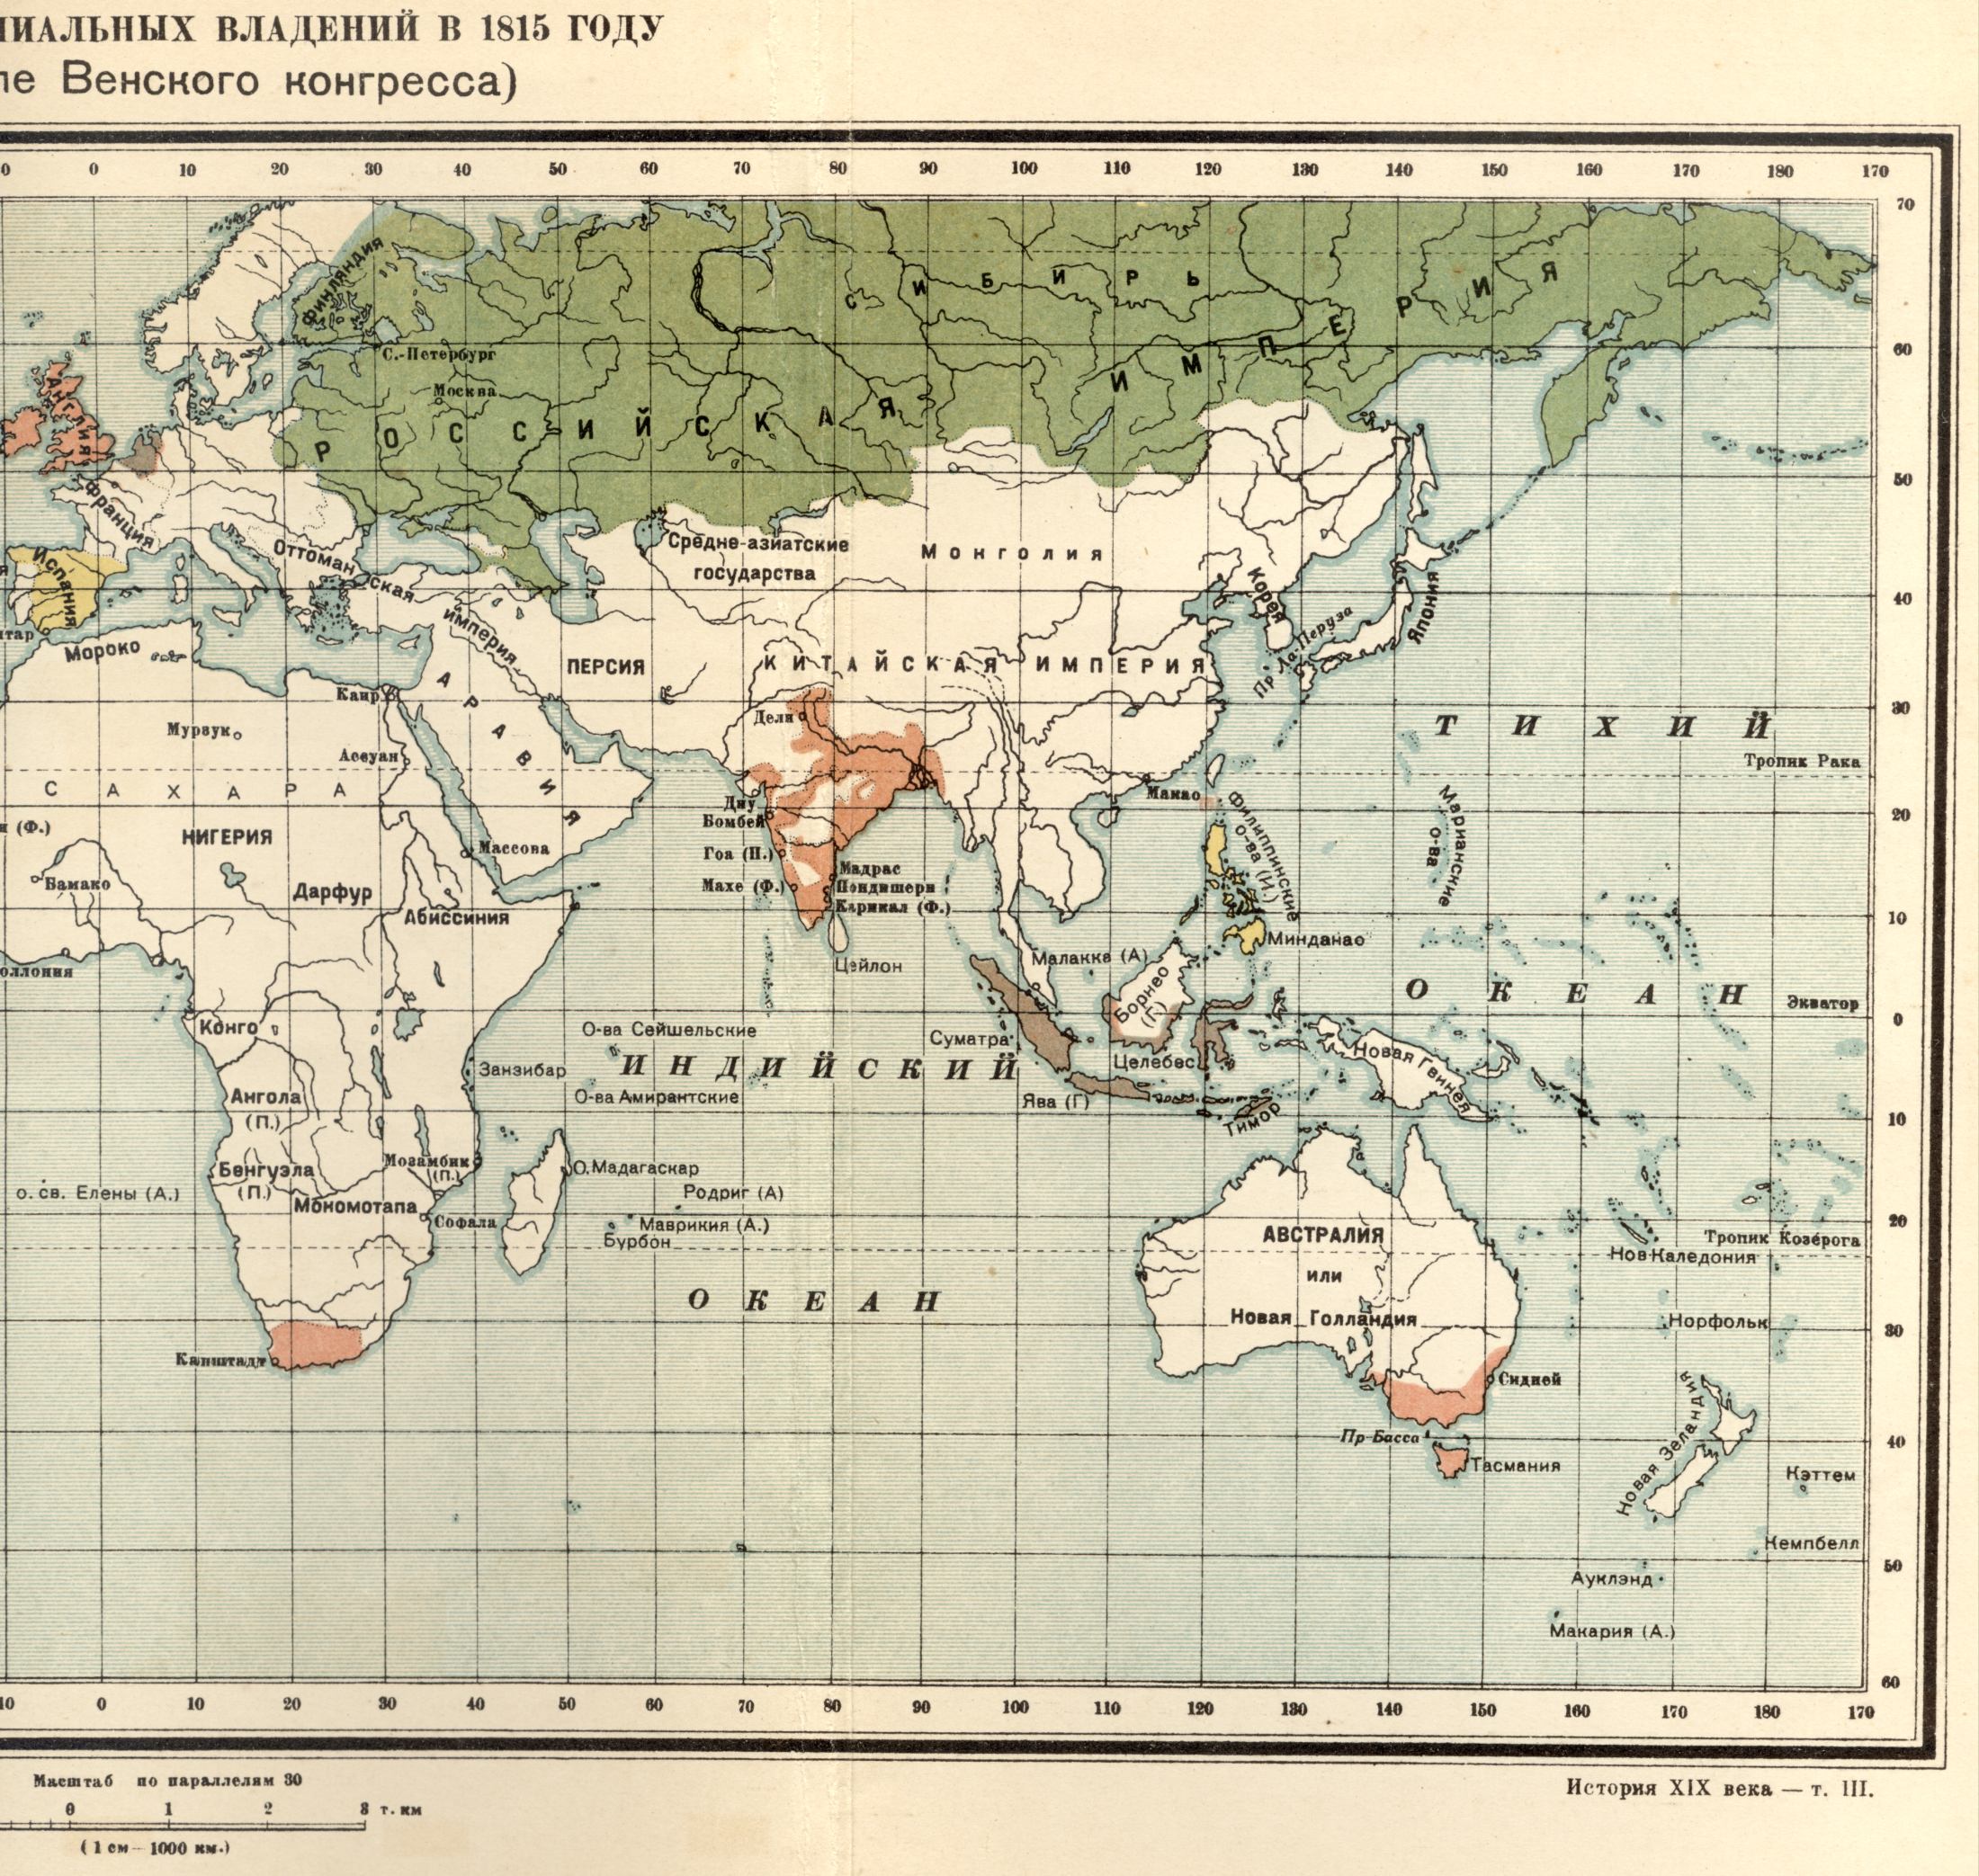 1815 року. Політична карта світу - карта колоніальних володінь в 1815 році після Віденського конгресу. Завантажити безкоштовно докладну карту, B0